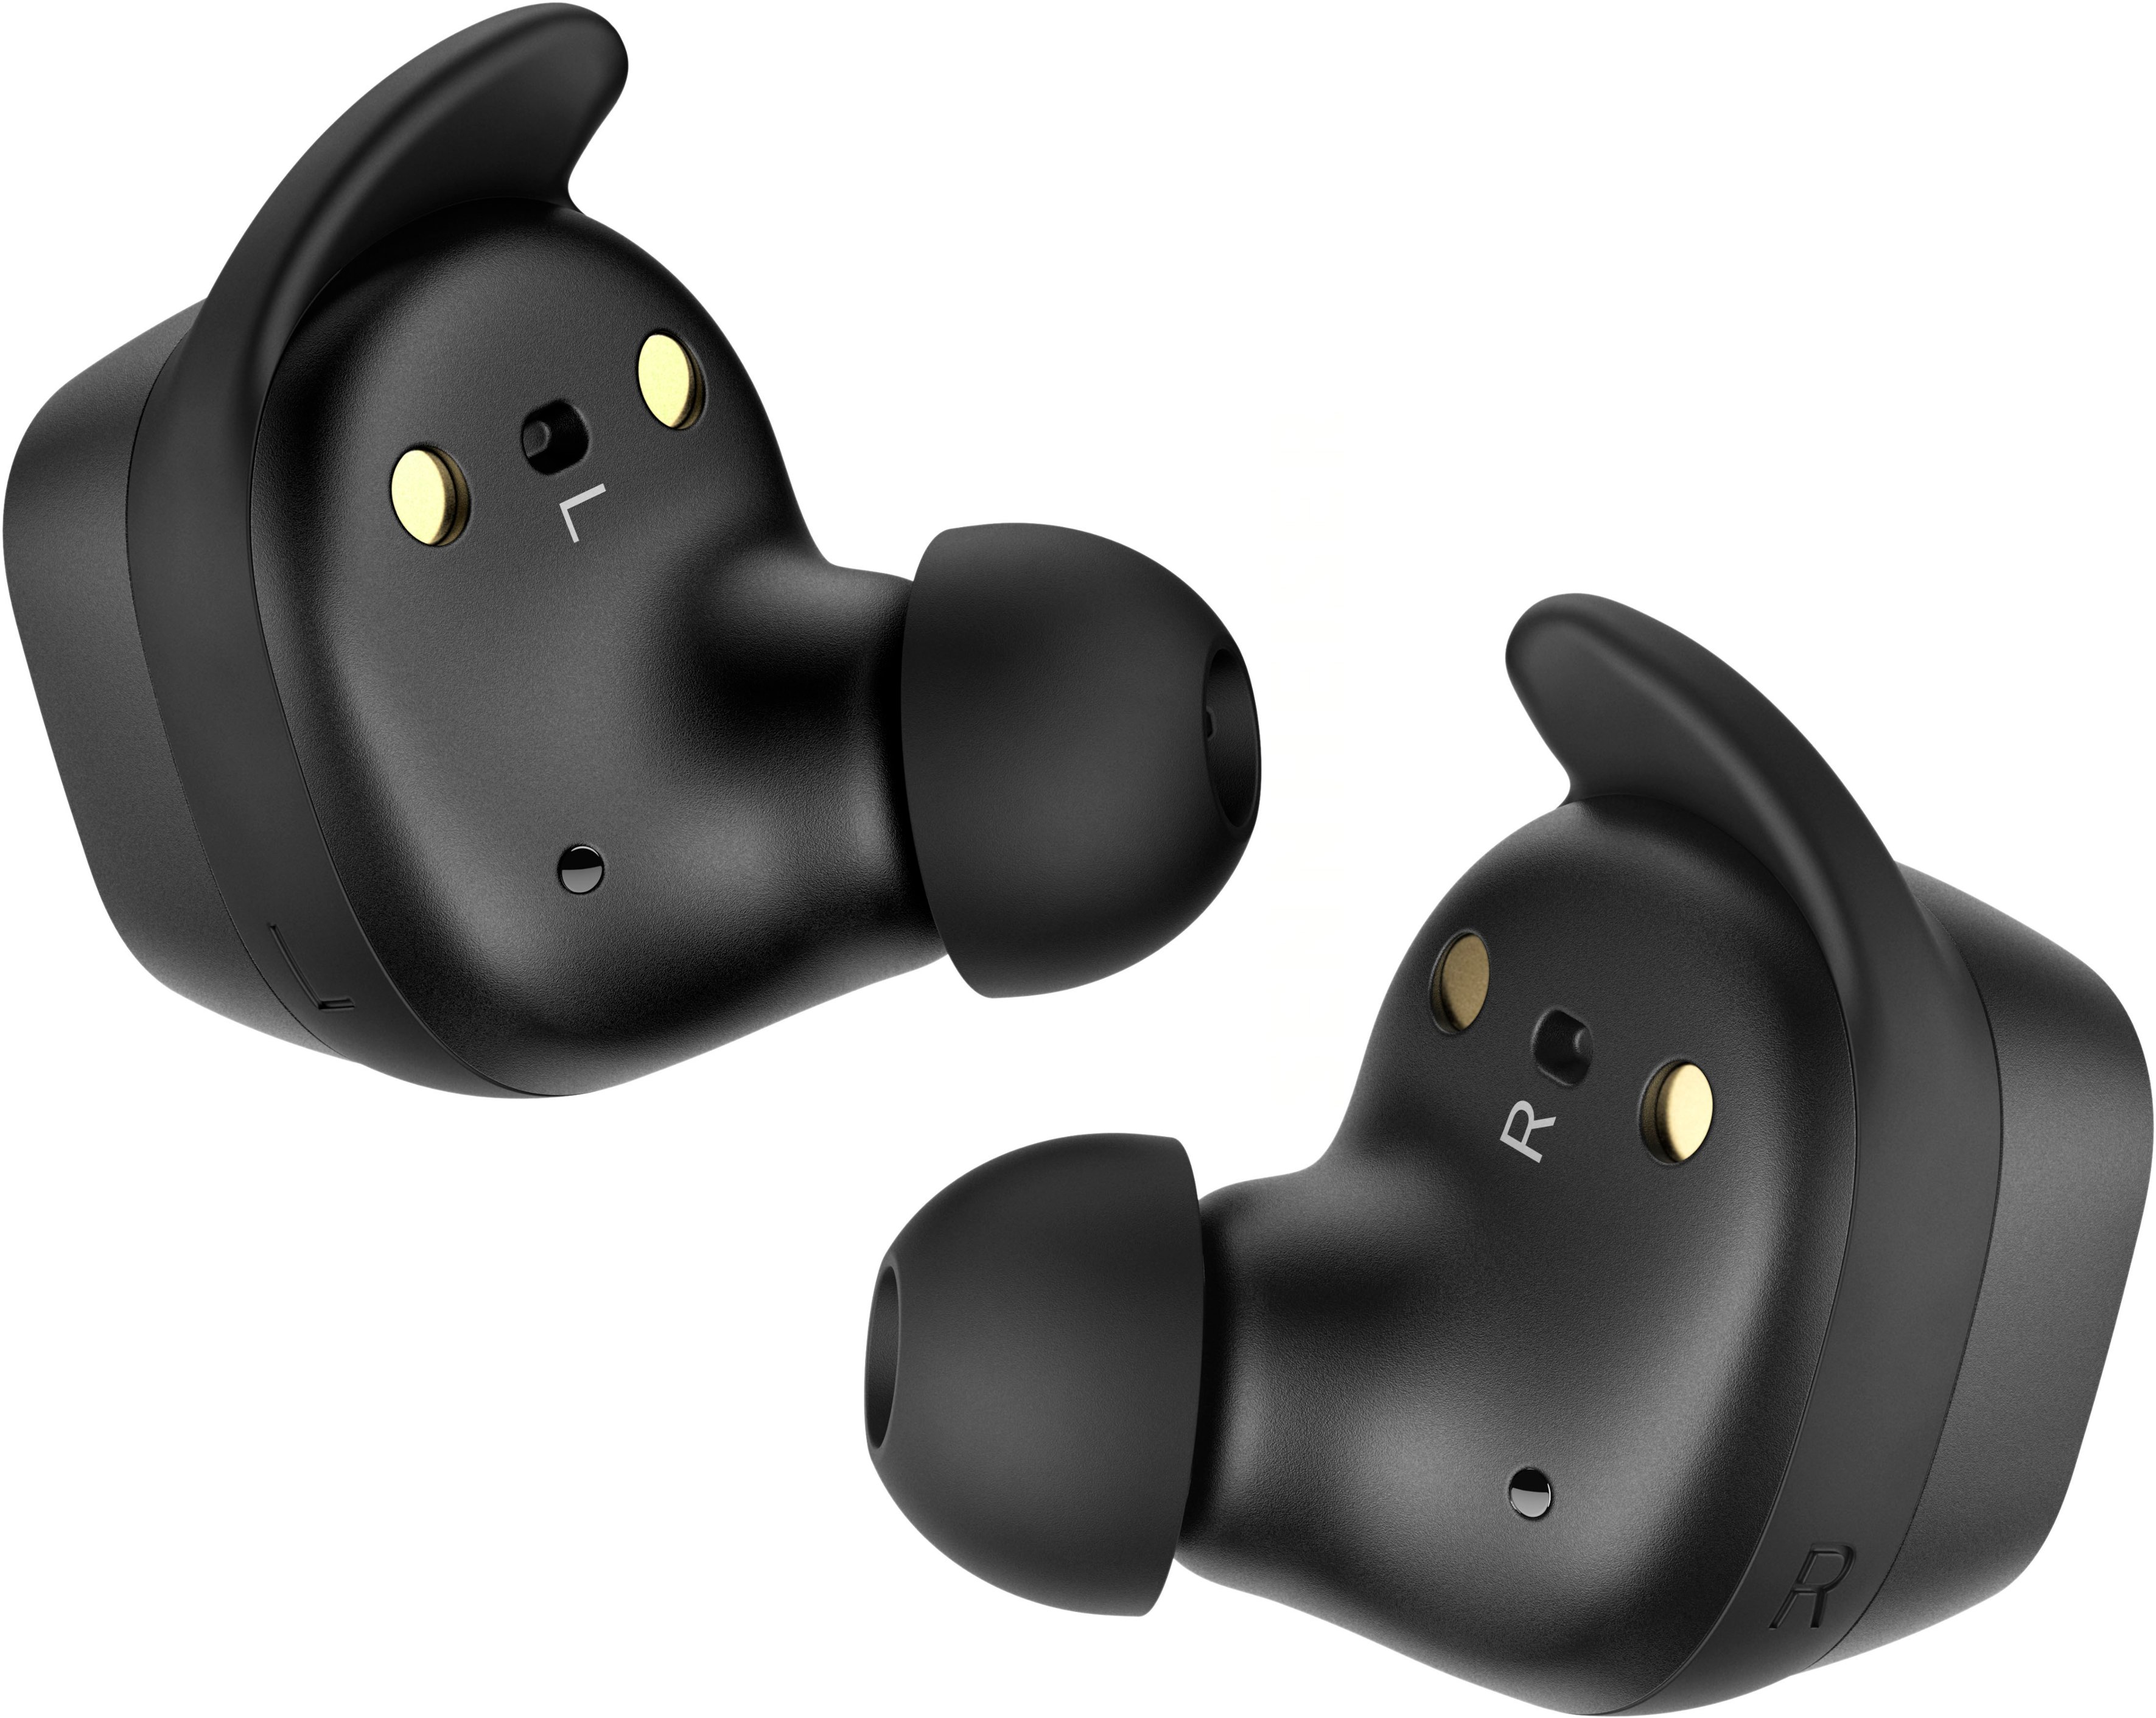 Sennheiser SPORT True Wireless In-Ear Headphones Black CX200TW1 